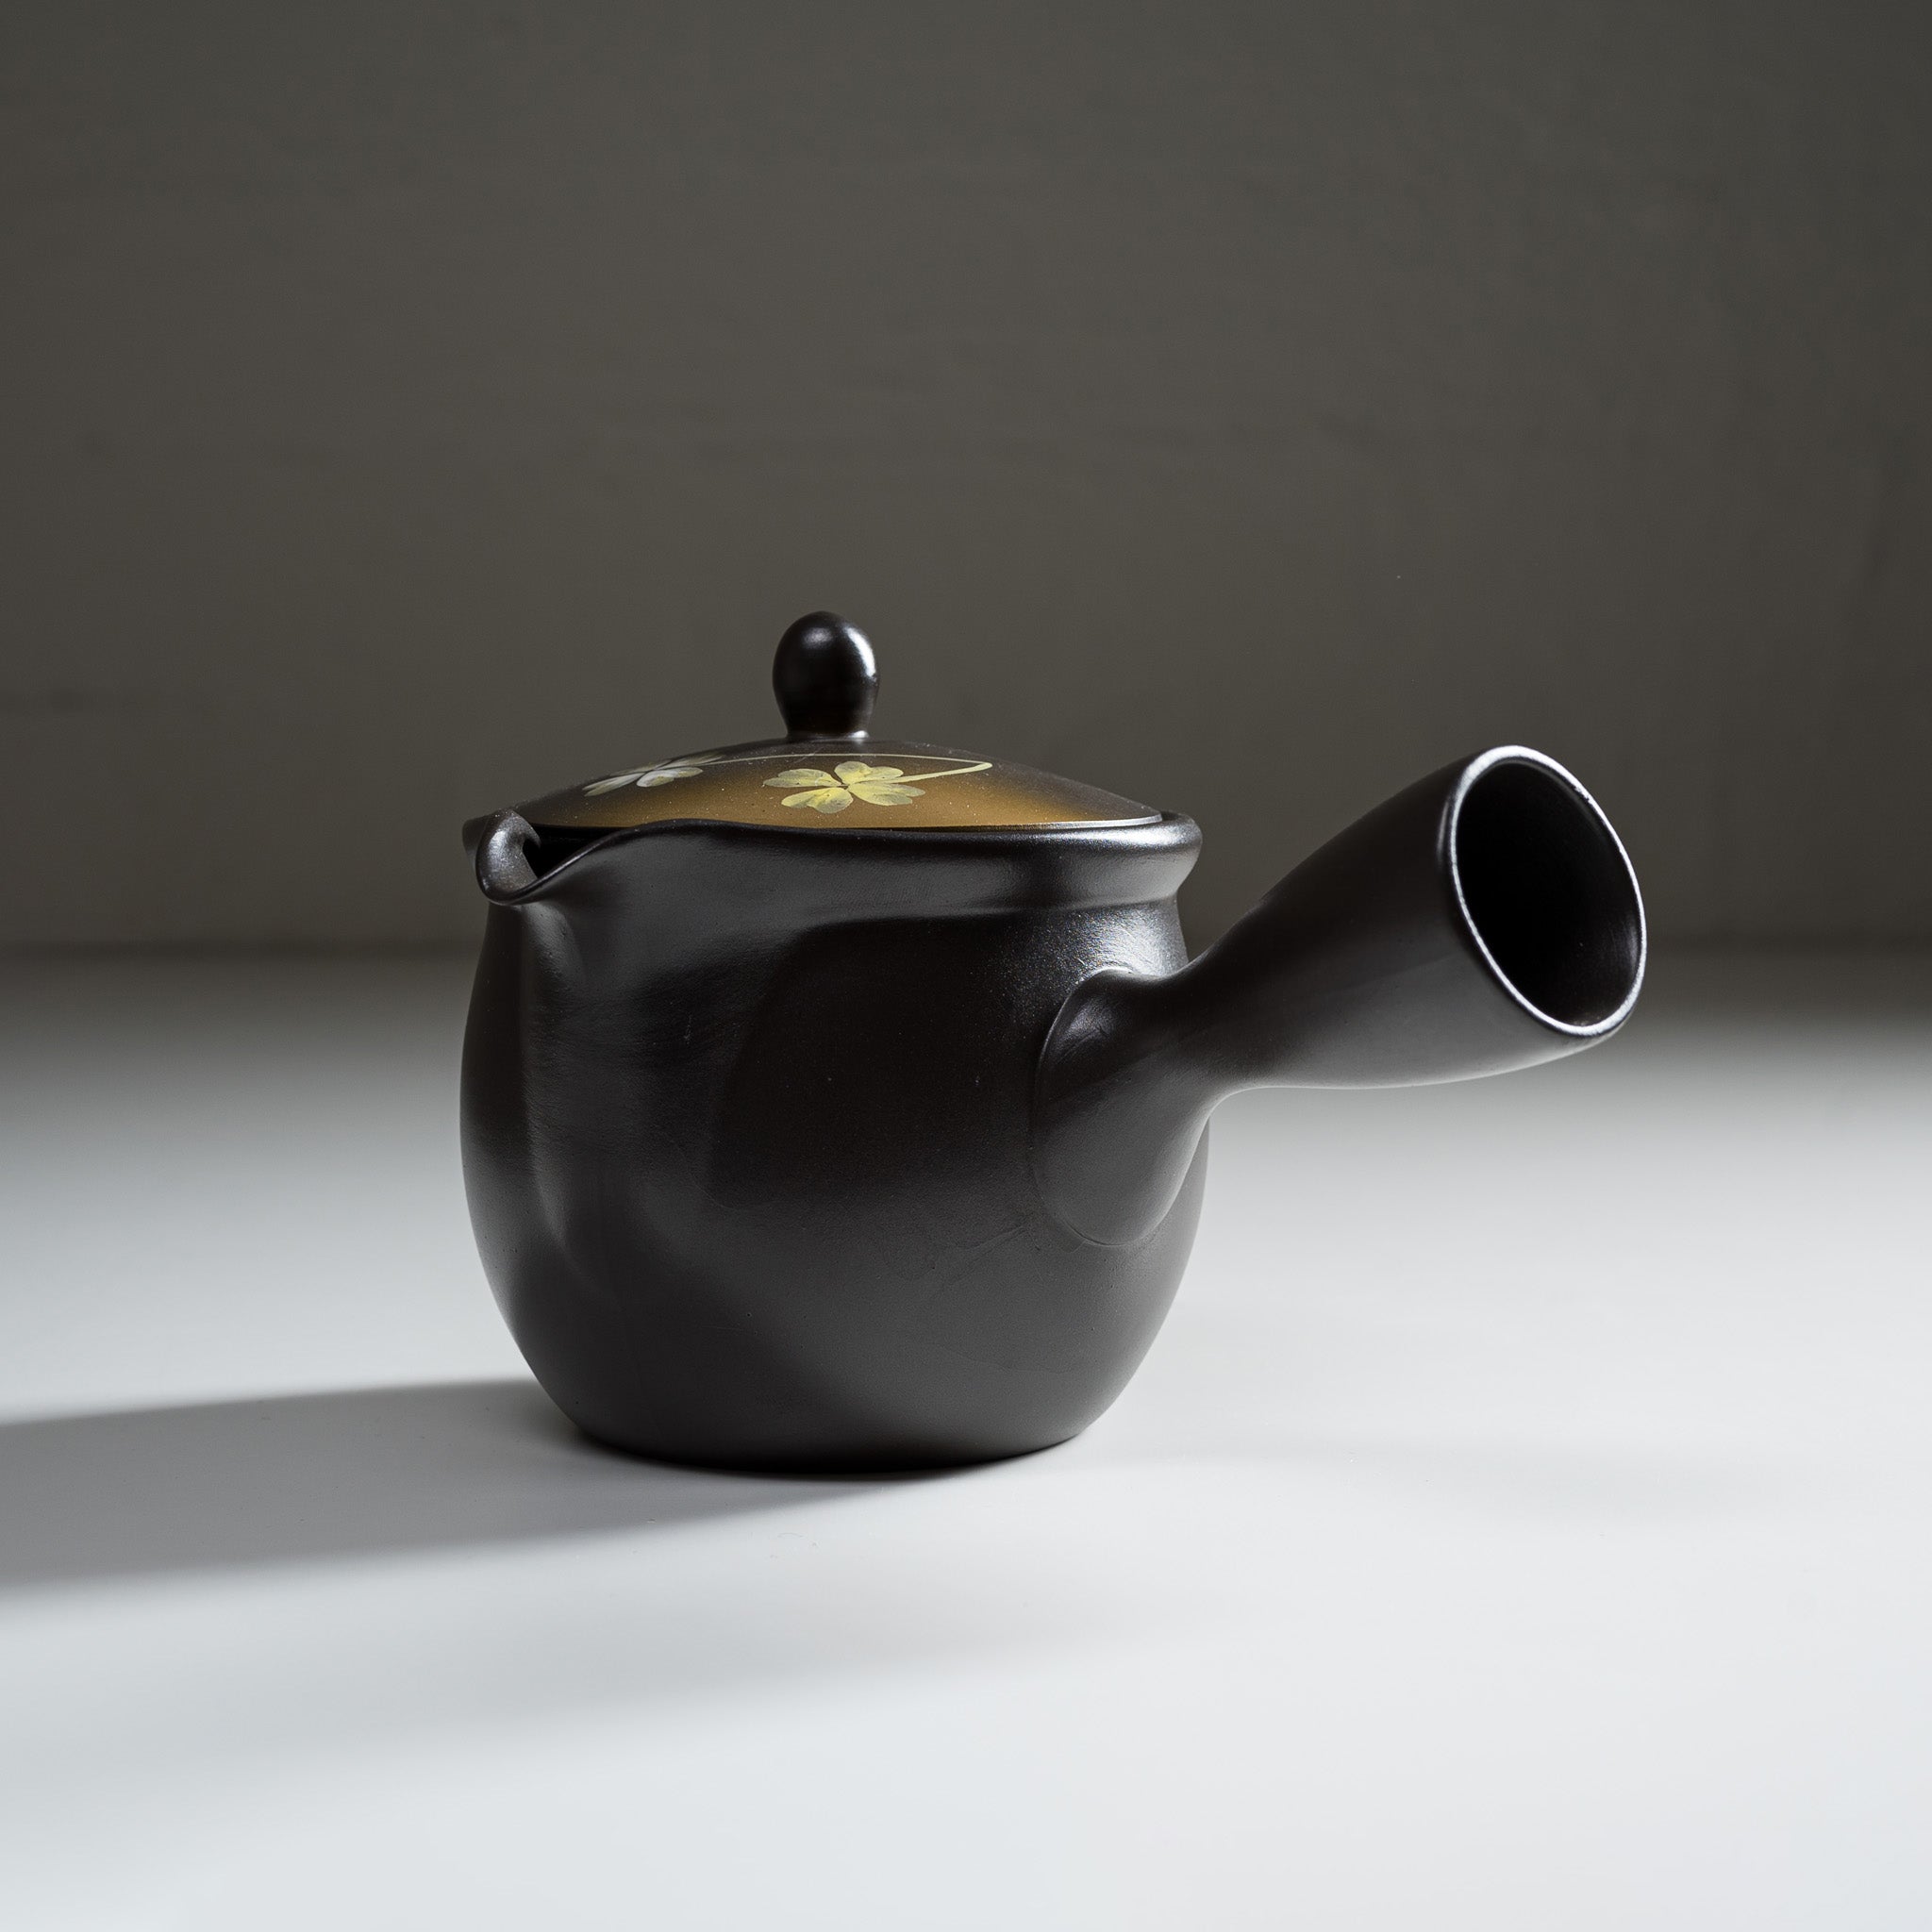 Hand-painted Tokoname Teapot - Clover - 540 ml / 常滑急須